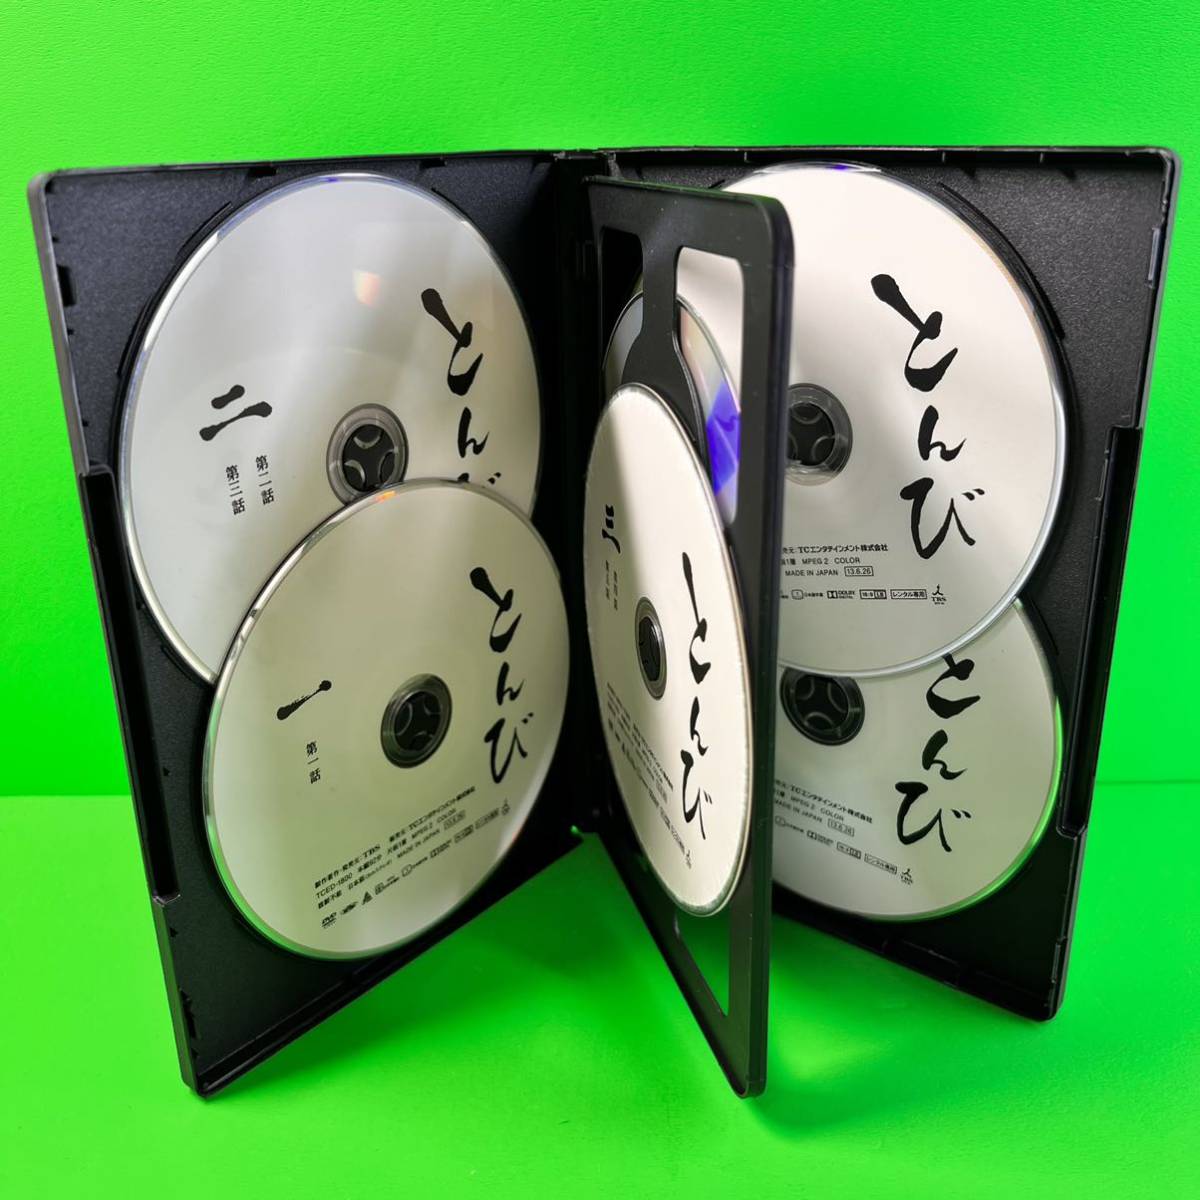 ケース付 とんび DVD 全6巻セット 全巻 内野聖陽/佐藤健